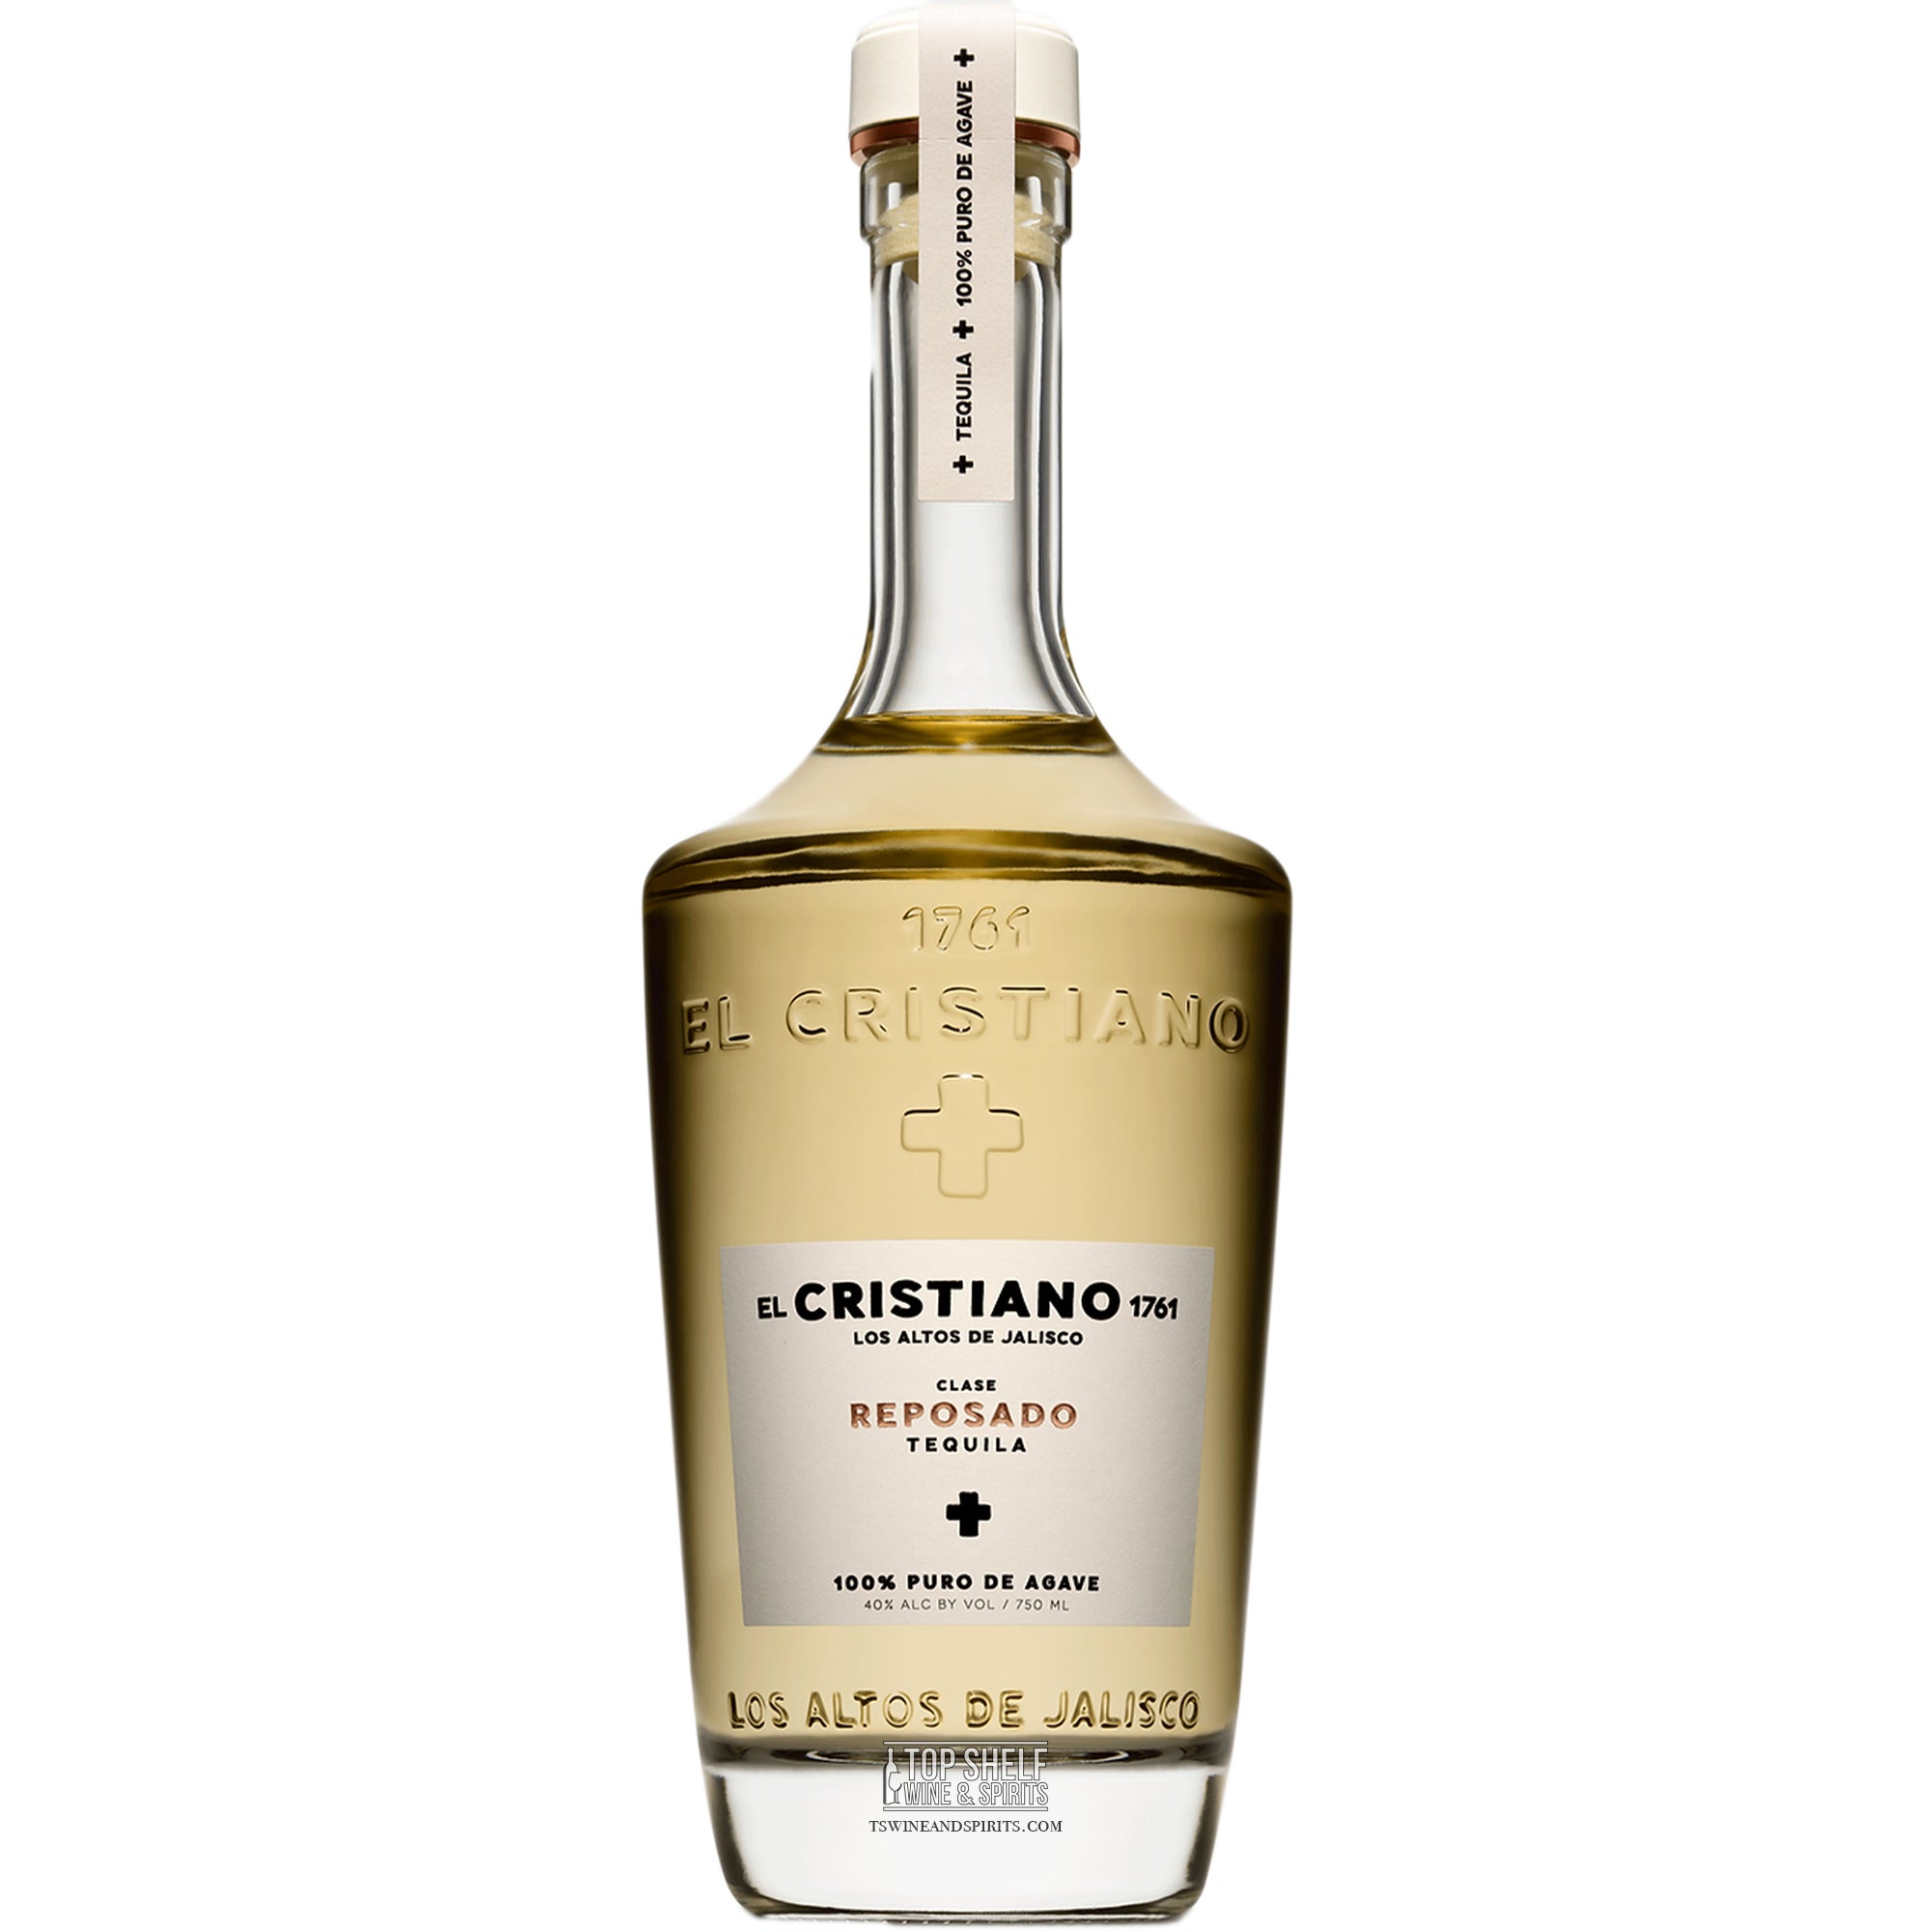 El Cristiano 1761 Reposado Tequila